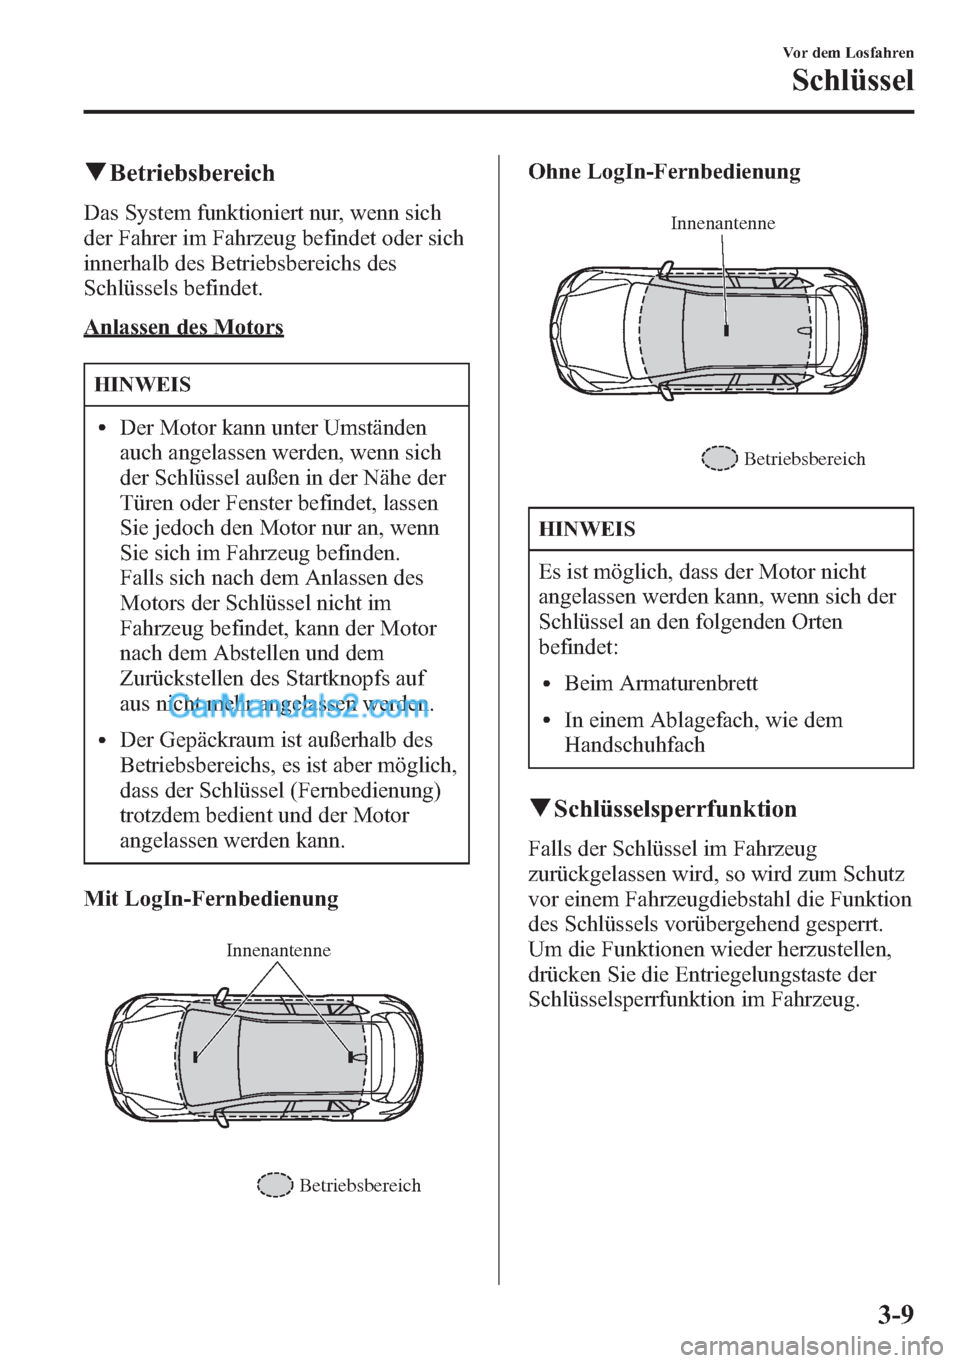 MAZDA MODEL CX-5 2015  Betriebsanleitung (in German) qBetriebsbereich
Das System funktioniert nur, wenn sich
der Fahrer im Fahrzeug befindet oder sich
innerhalb des Betriebsbereichs des
Schlüssels befindet.
Anlassen des Motors
HINWEIS
lDer Motor kann u